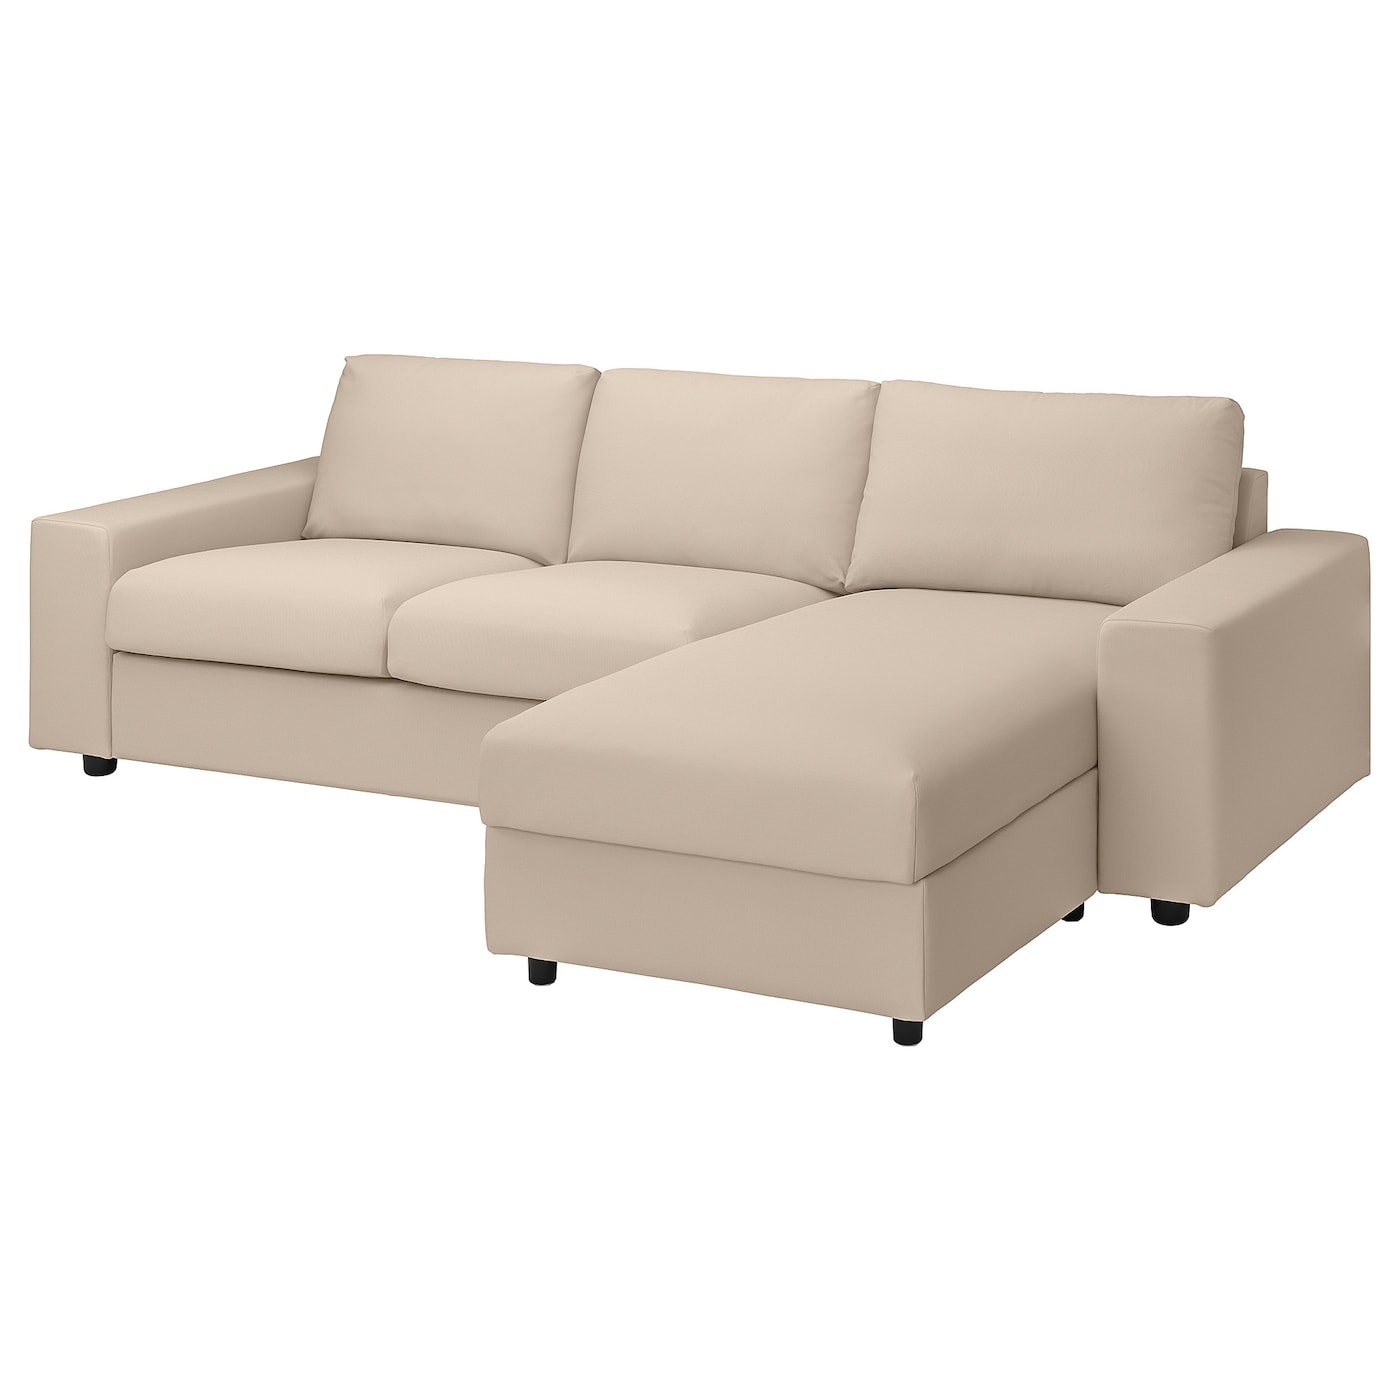 ВИМЛЕ 3-местный диван + диван, с широкими подлокотниками/Халларп бежевый VIMLE IKEA диван прямой смарт mille 09 3 х местный с подлокотниками еврокнижка а2491530061